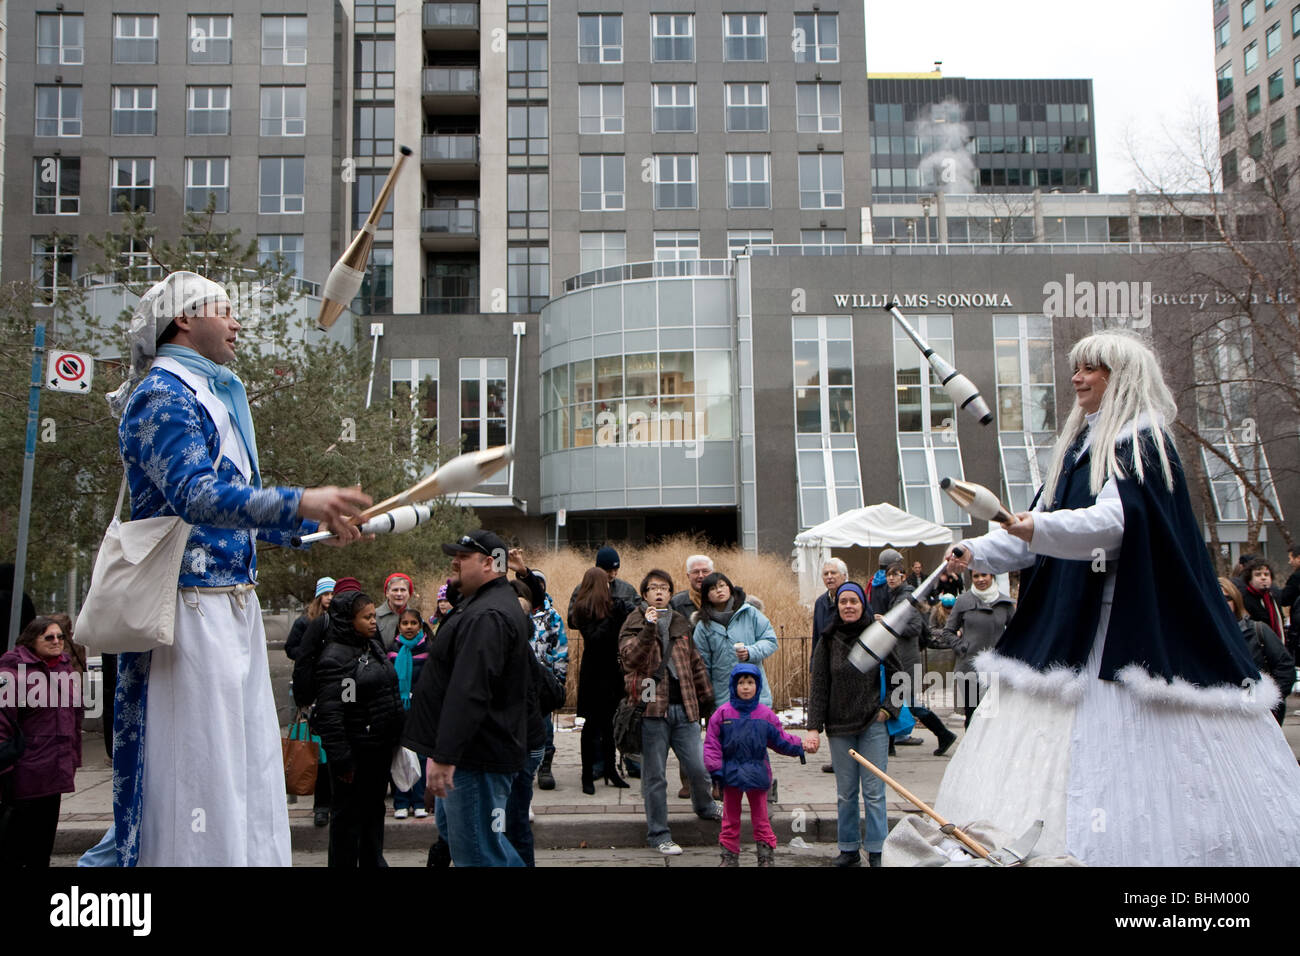 Jongleur jongleurs effectuant une foule d'hiver pierres Banque D'Images